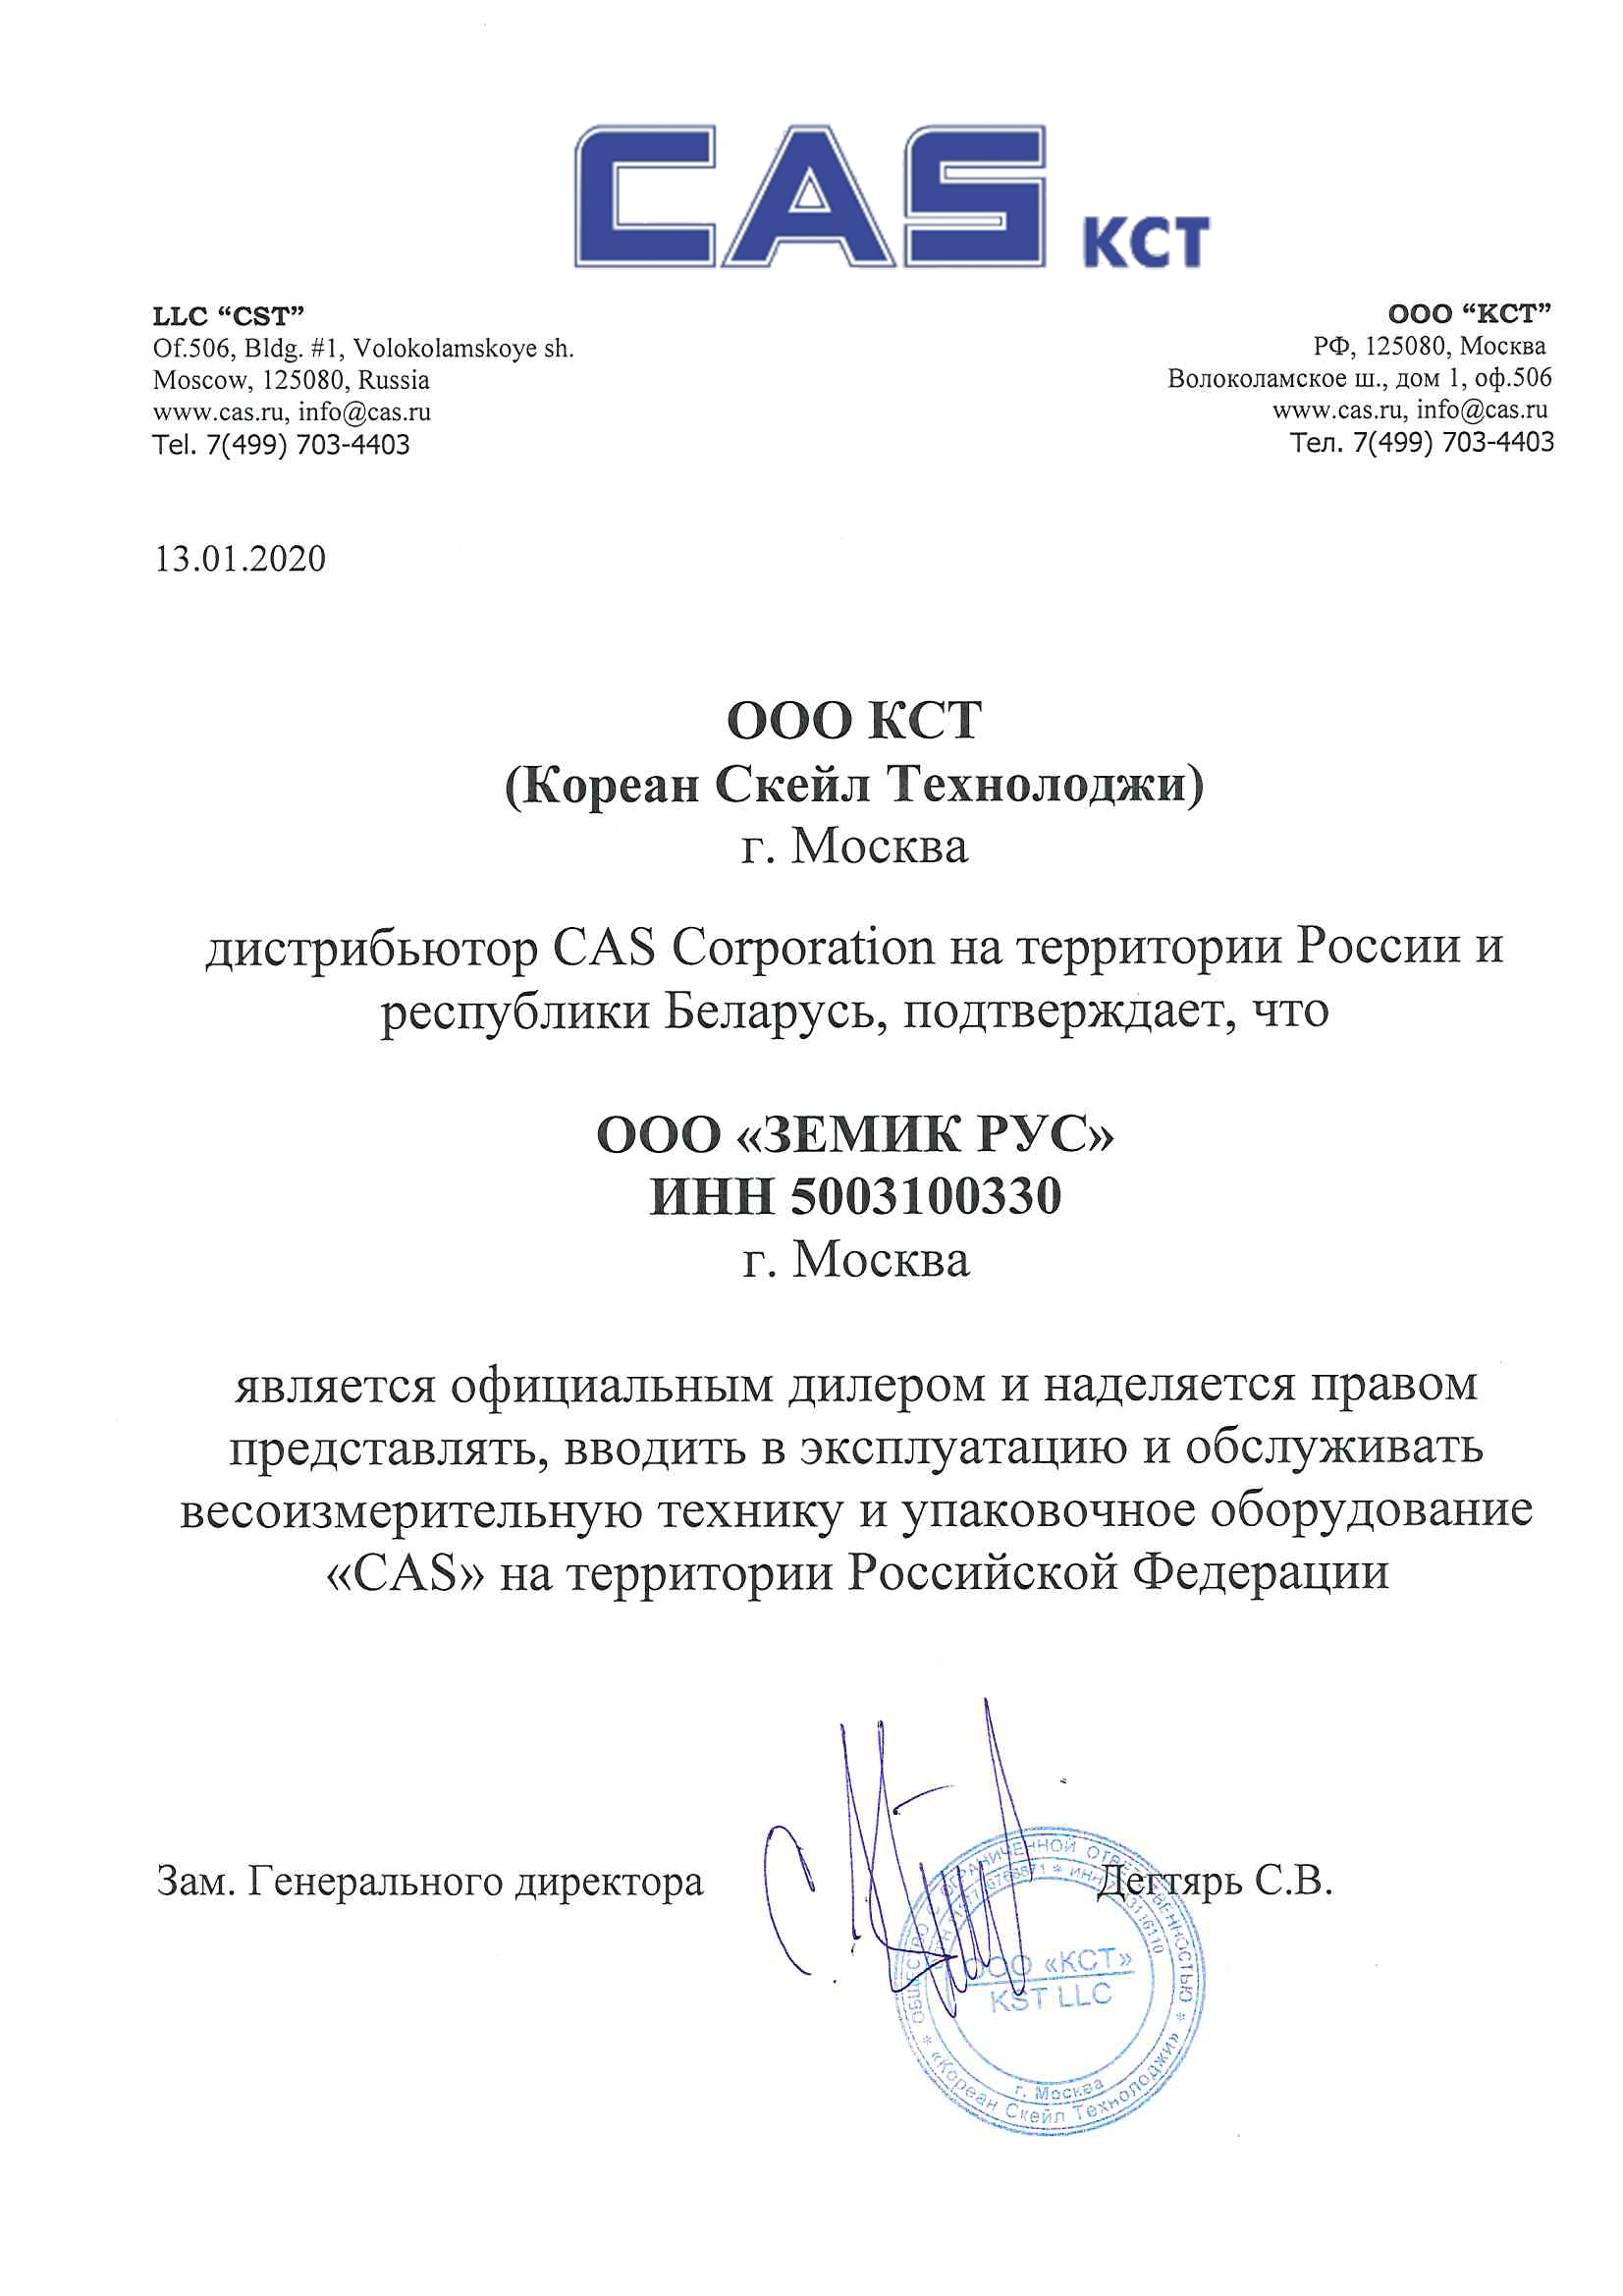 ООО Земик Рус официальный дилер CAS на территории РФ